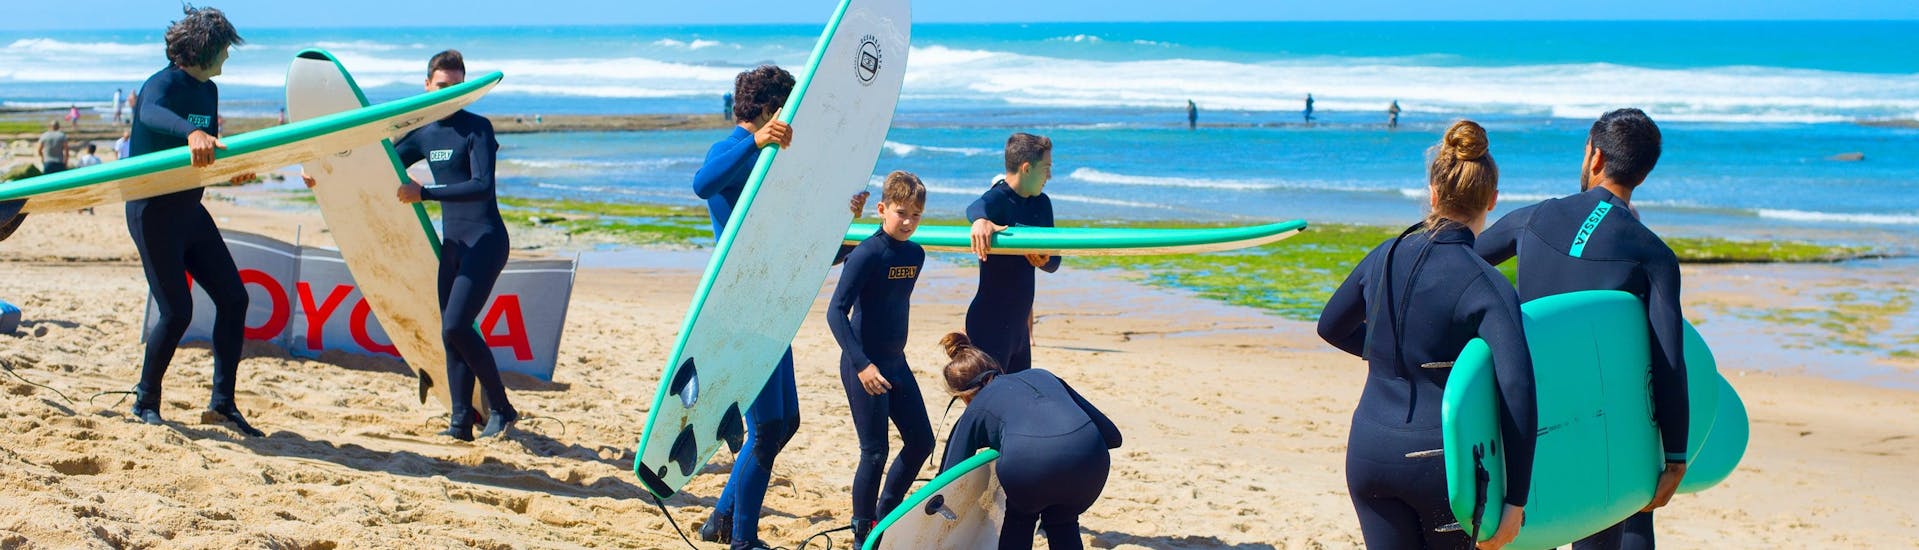 Una surfista sfida le onde facendo surf presso Ericeira.